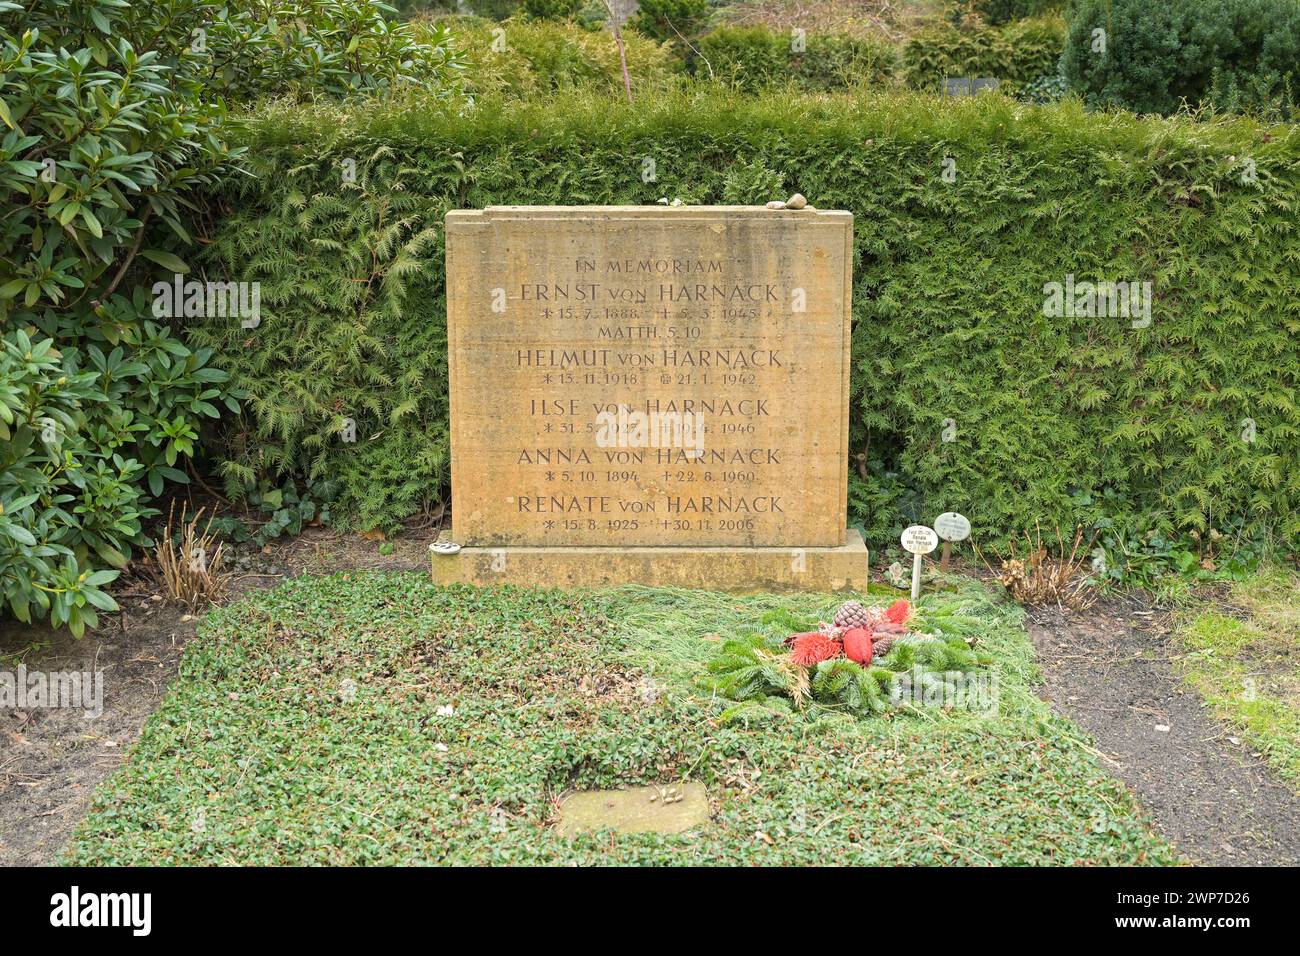 Ernst von Harnack und Familie, Ehrengrab, Friedhof Zehlendorf, Onkel-Tom-Straße, Zehlendorf, Berlin, Deutschland Stock Photo